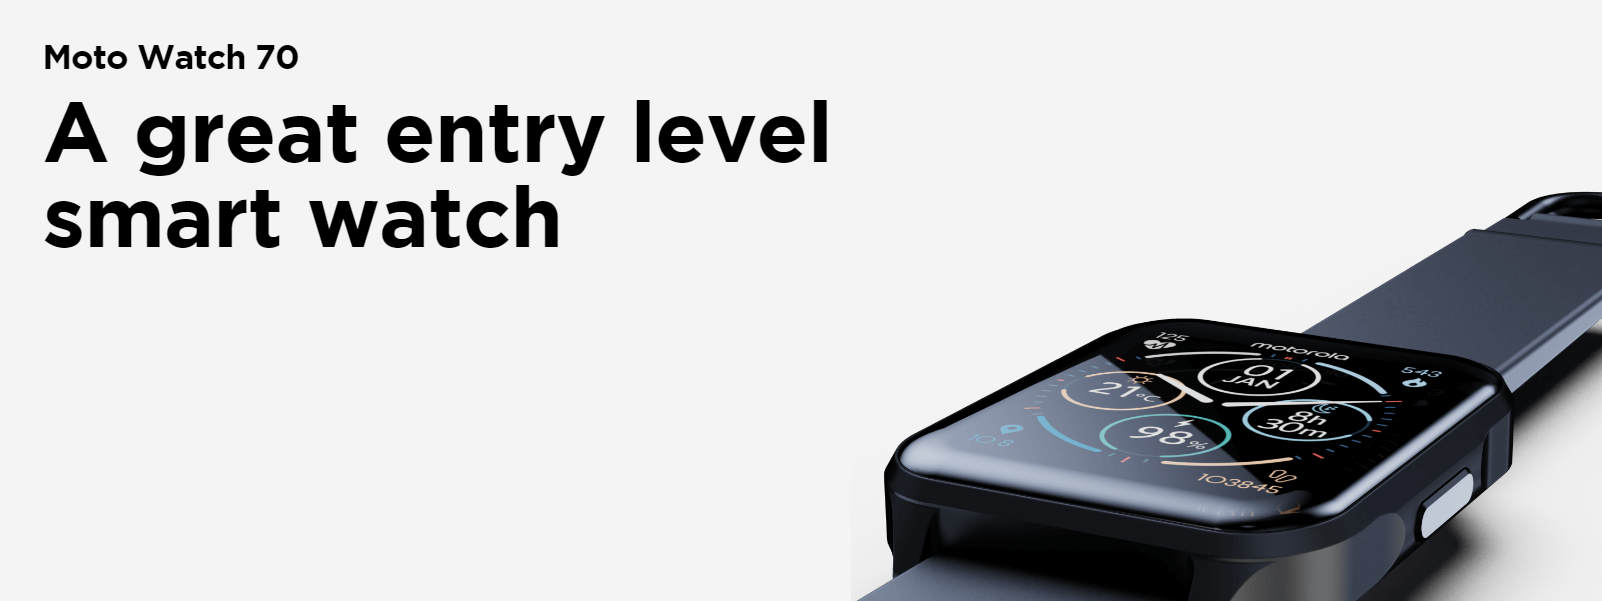 Motorola kondigt Moto Watch 70 smartwatch met IP67 bescherming en temperatuursensor aan